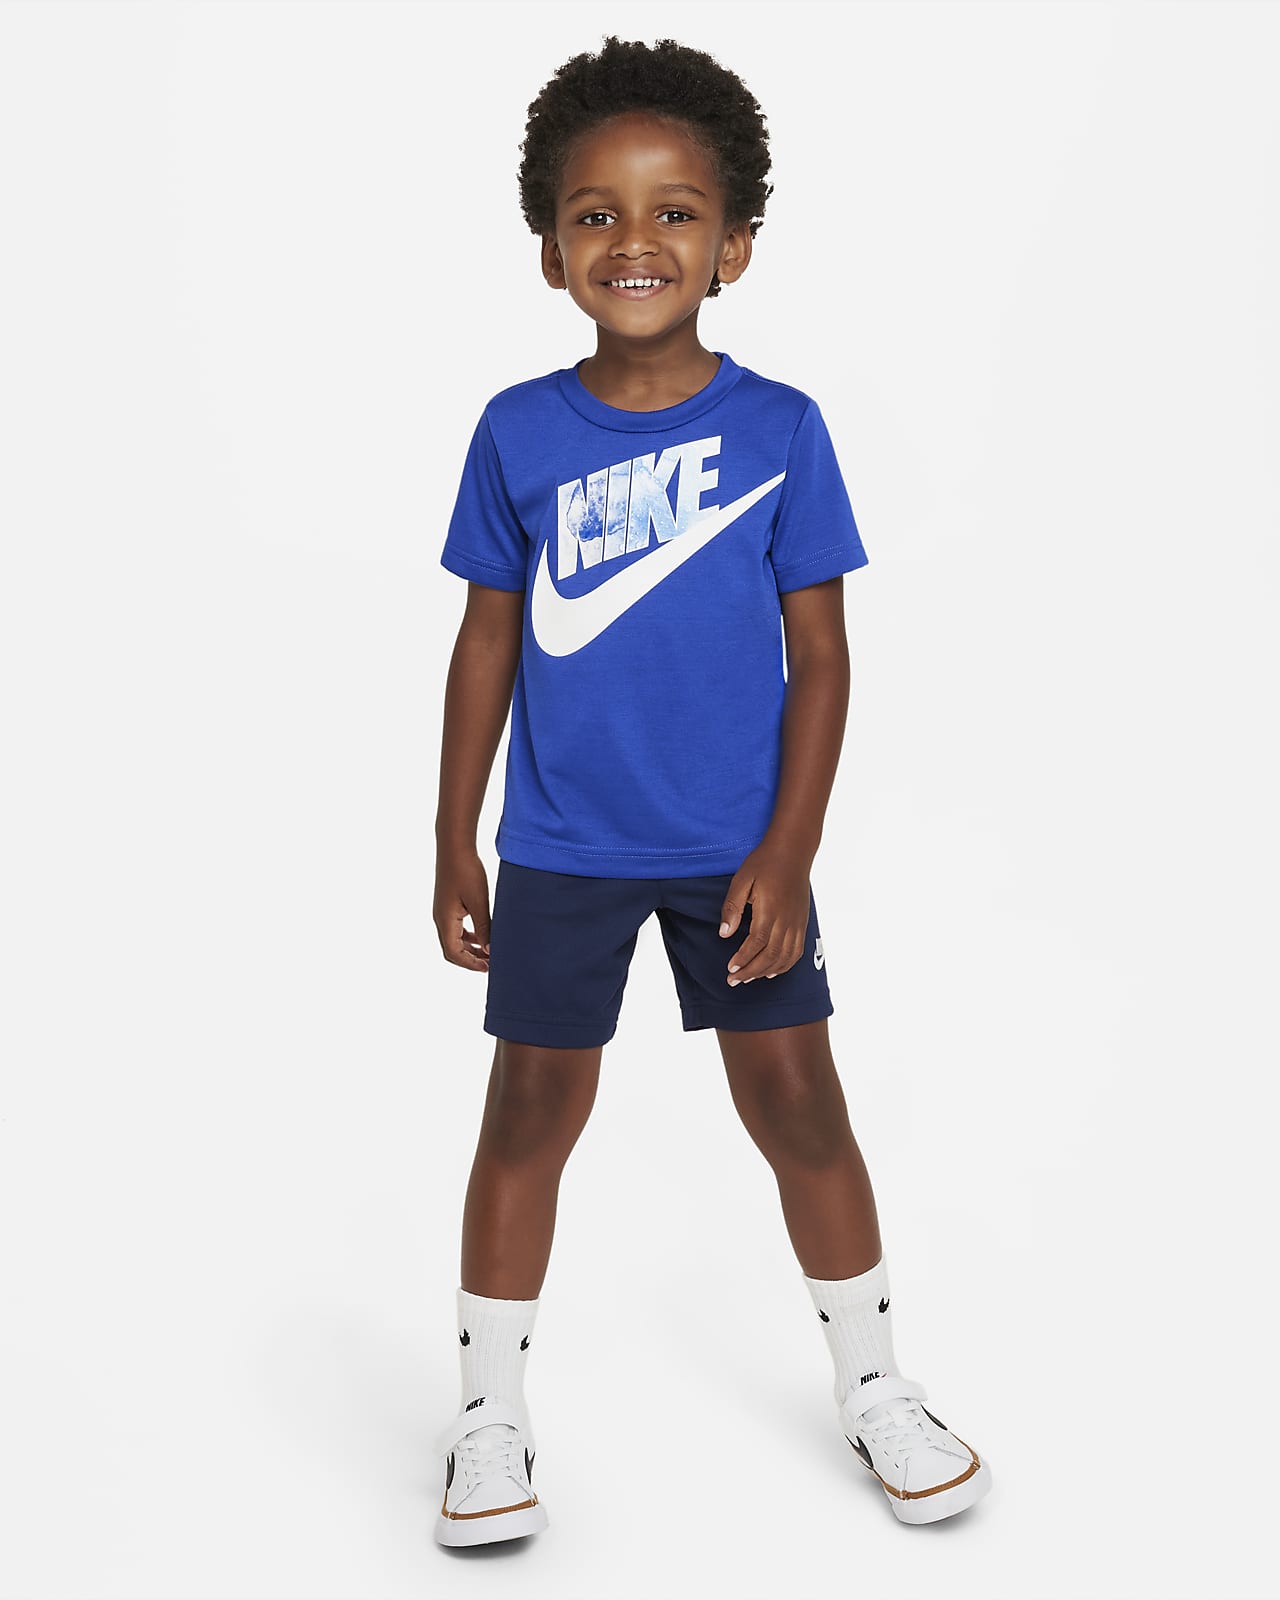 Enciclopedia fresa Lo siento Nike Conjunto de camiseta y pantalón corto - Bebé e infantil. Nike ES